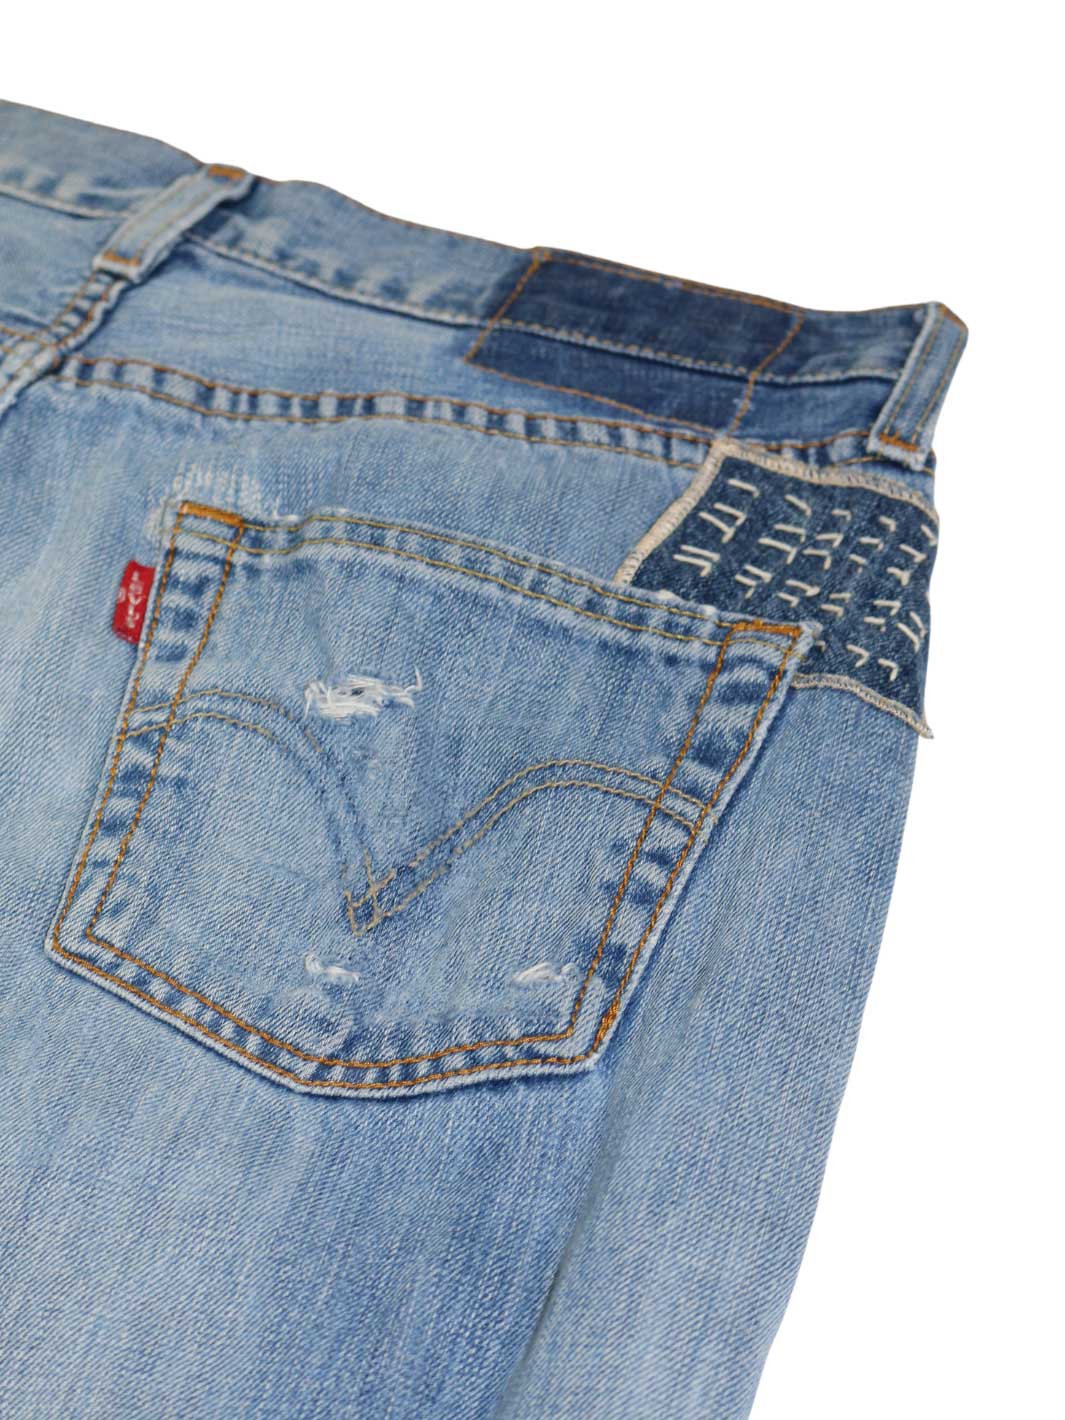 Vintage Herren Jeans hellblaue Waschung Größe 30/32rechte Gesässtasche mit leichten Grindings 